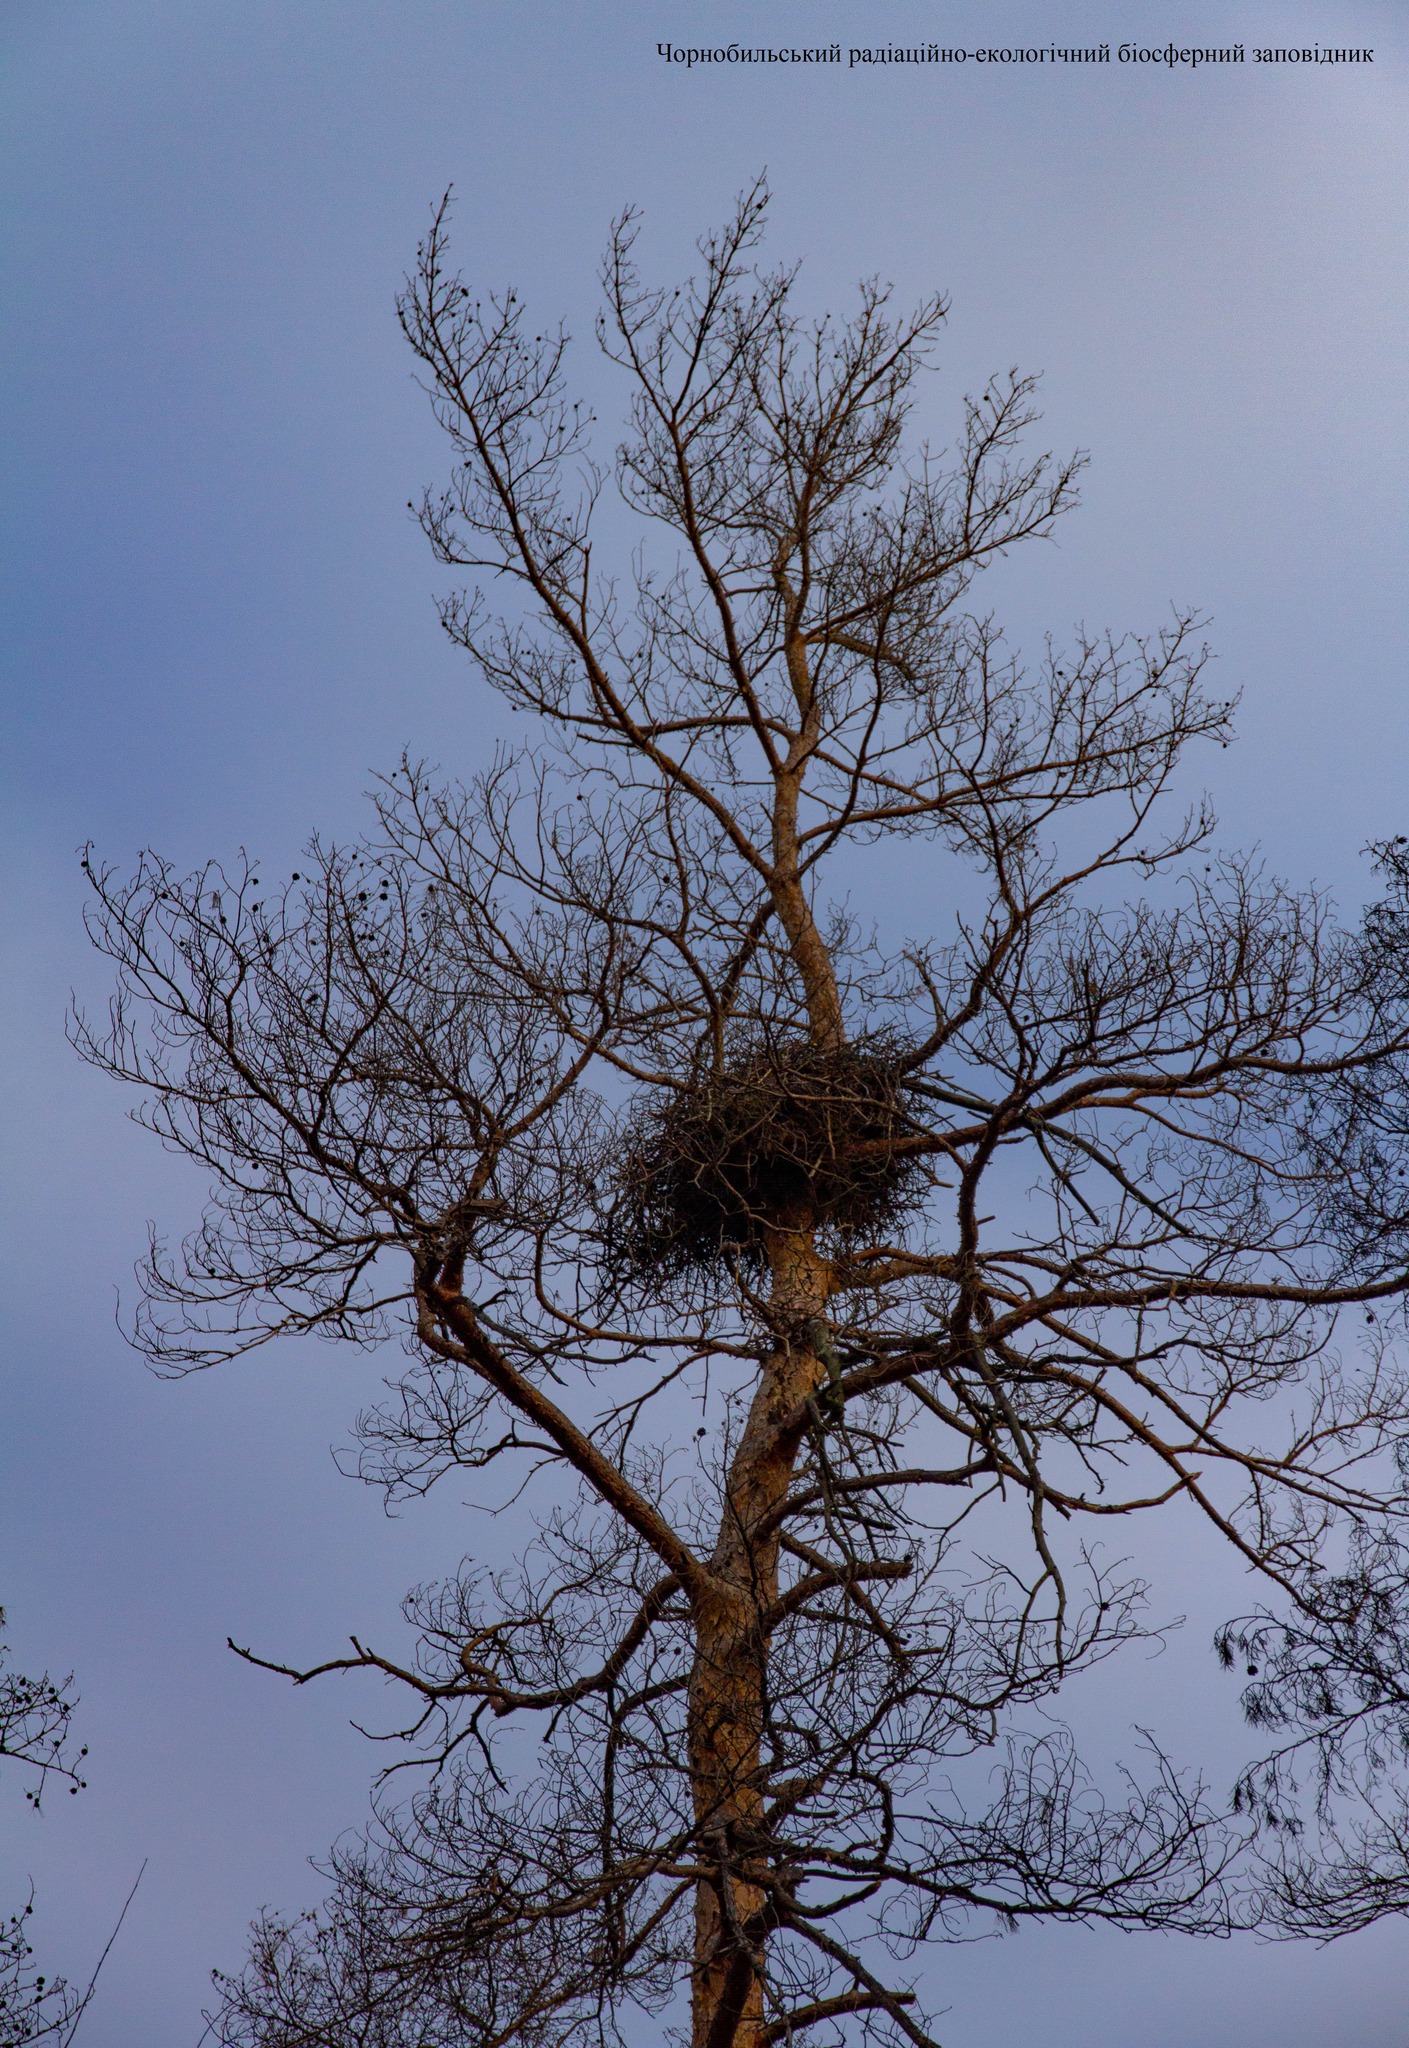 Гнездо орлана-белохвоста